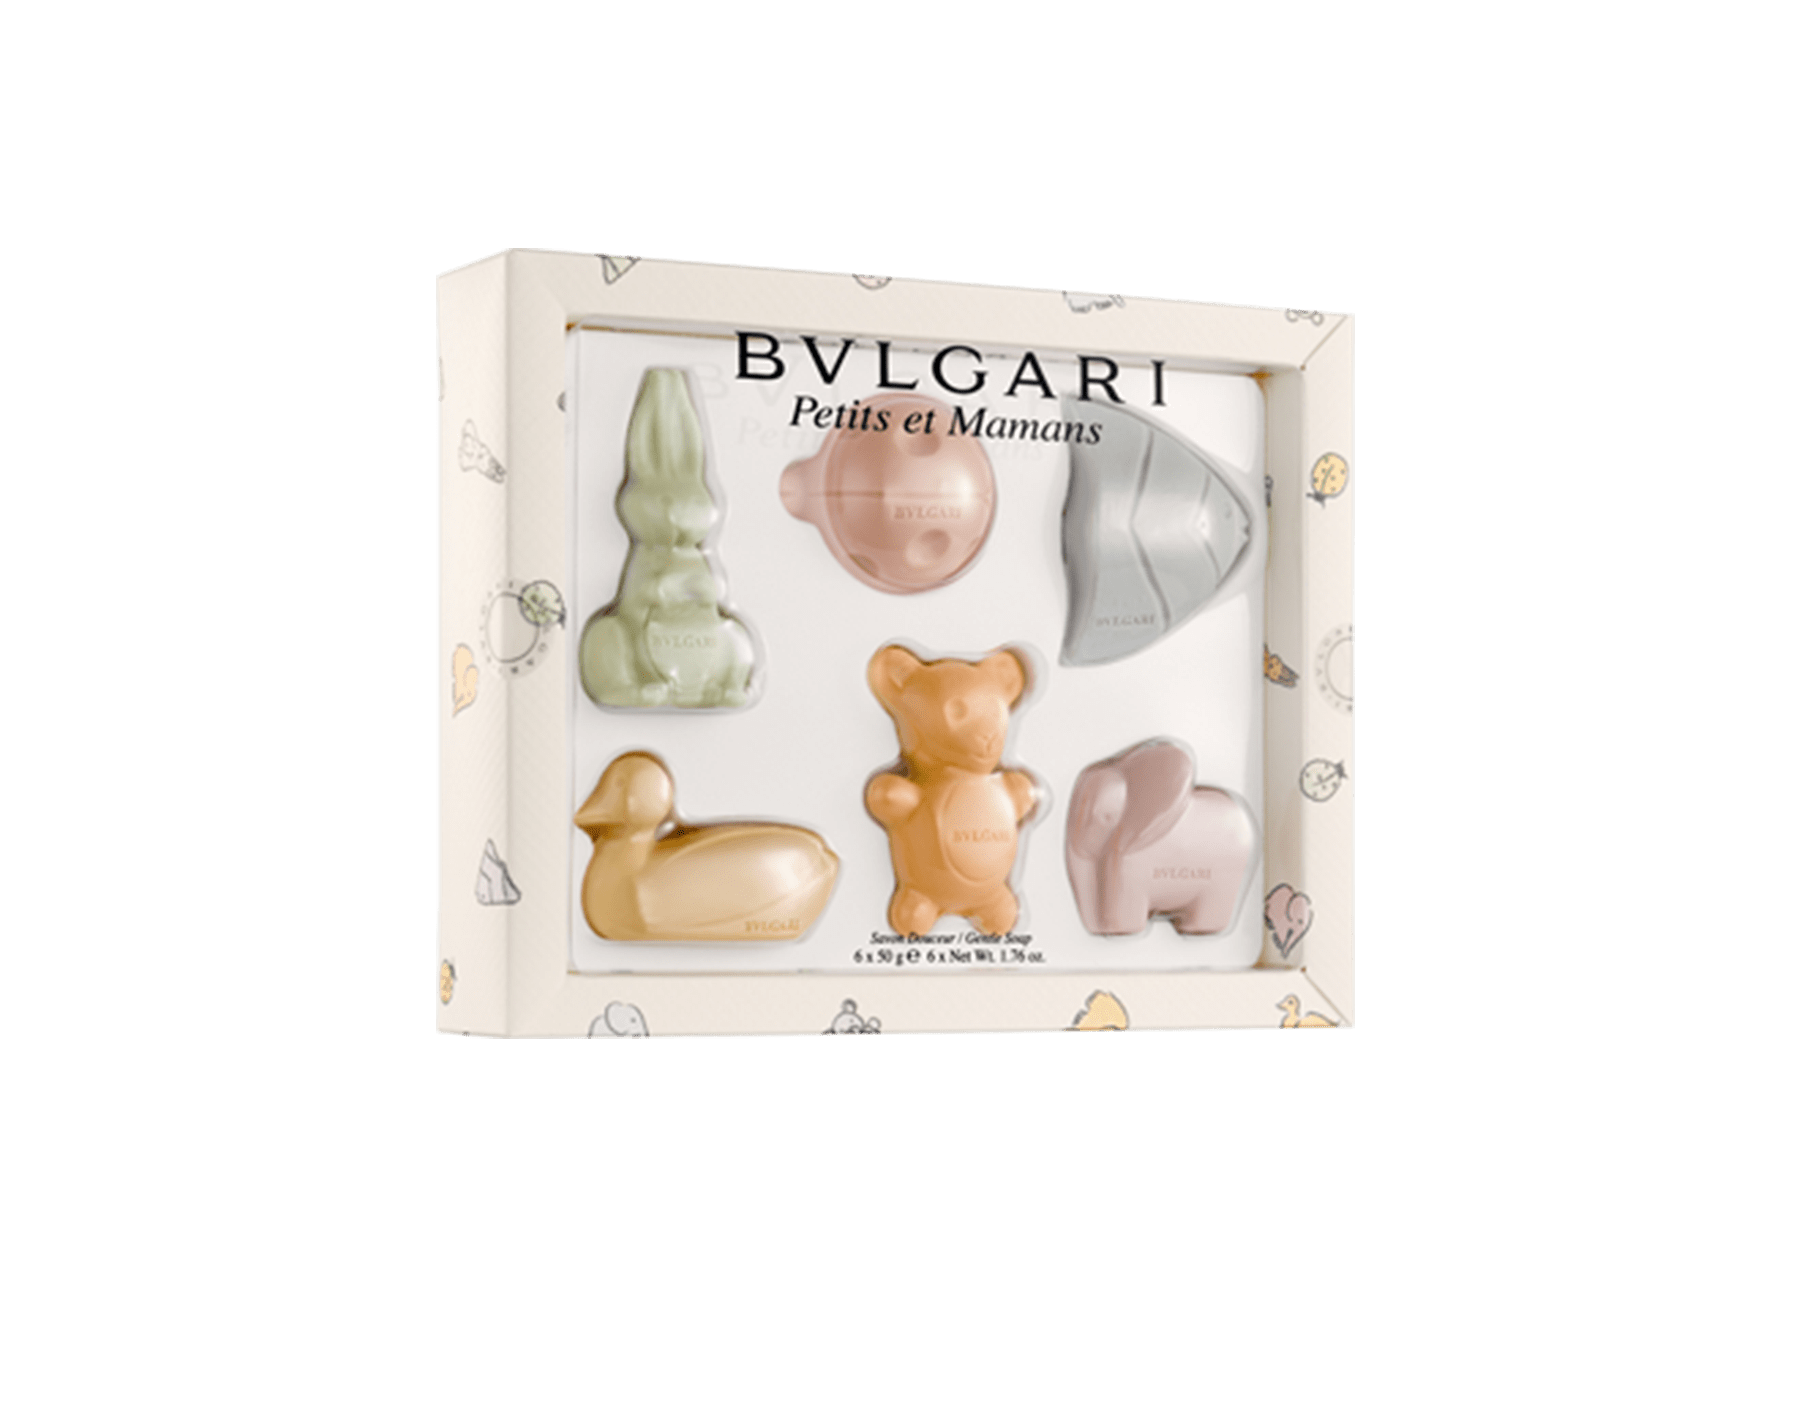 bvlgari soap